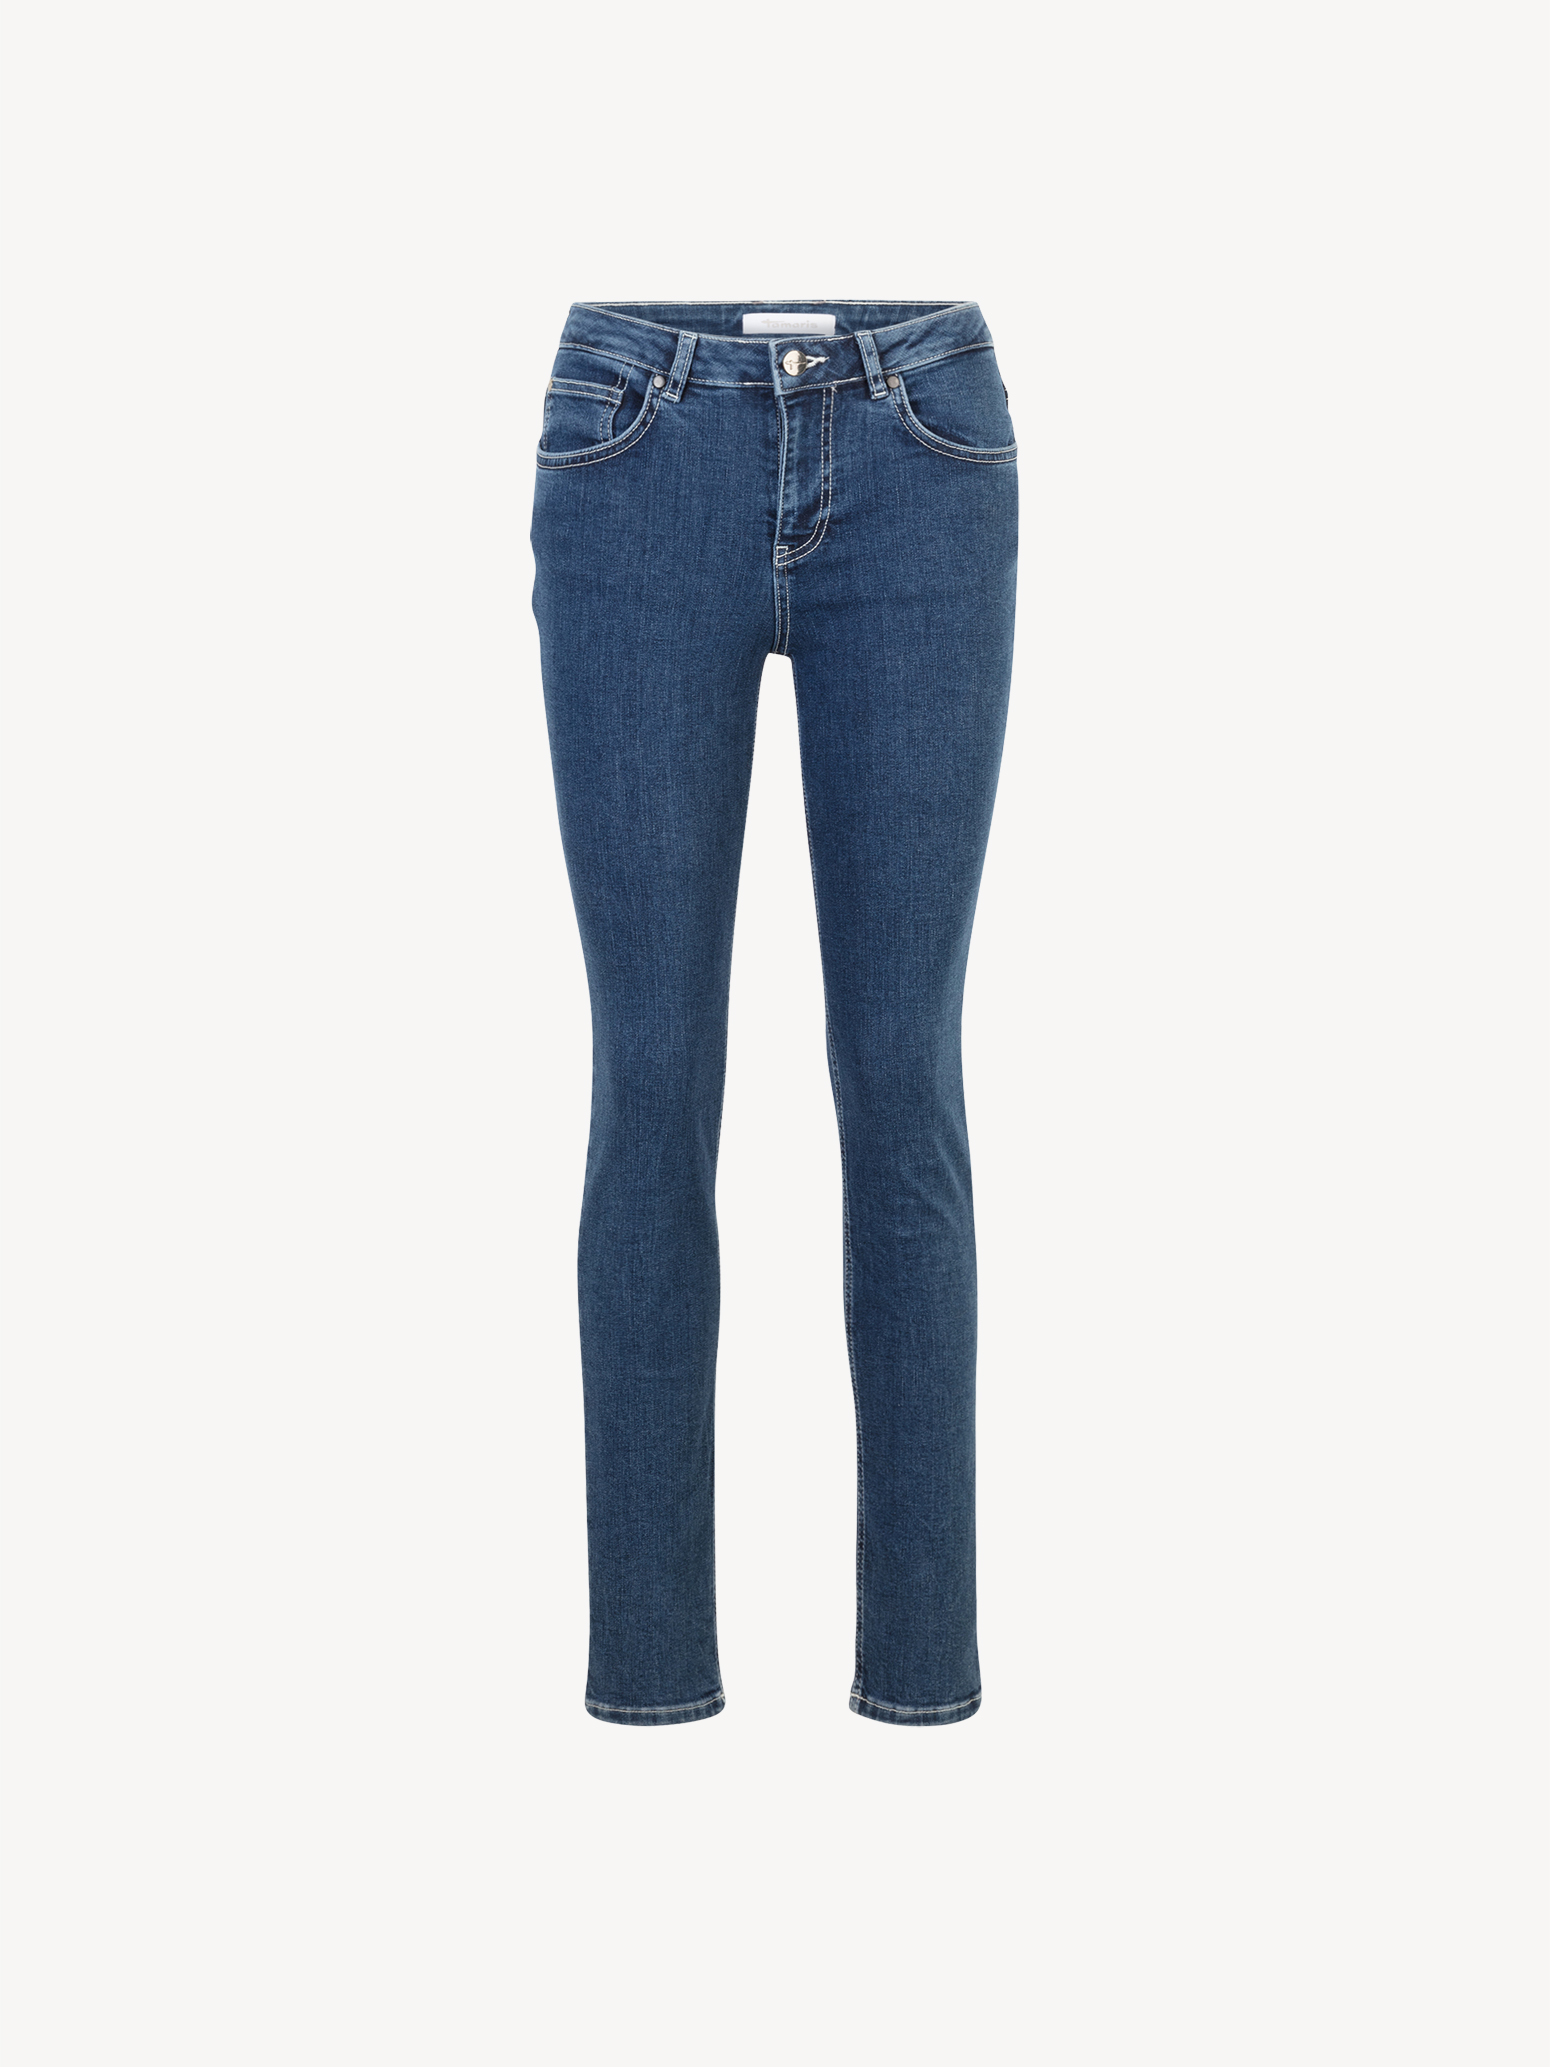 jeans bleu - 40/32